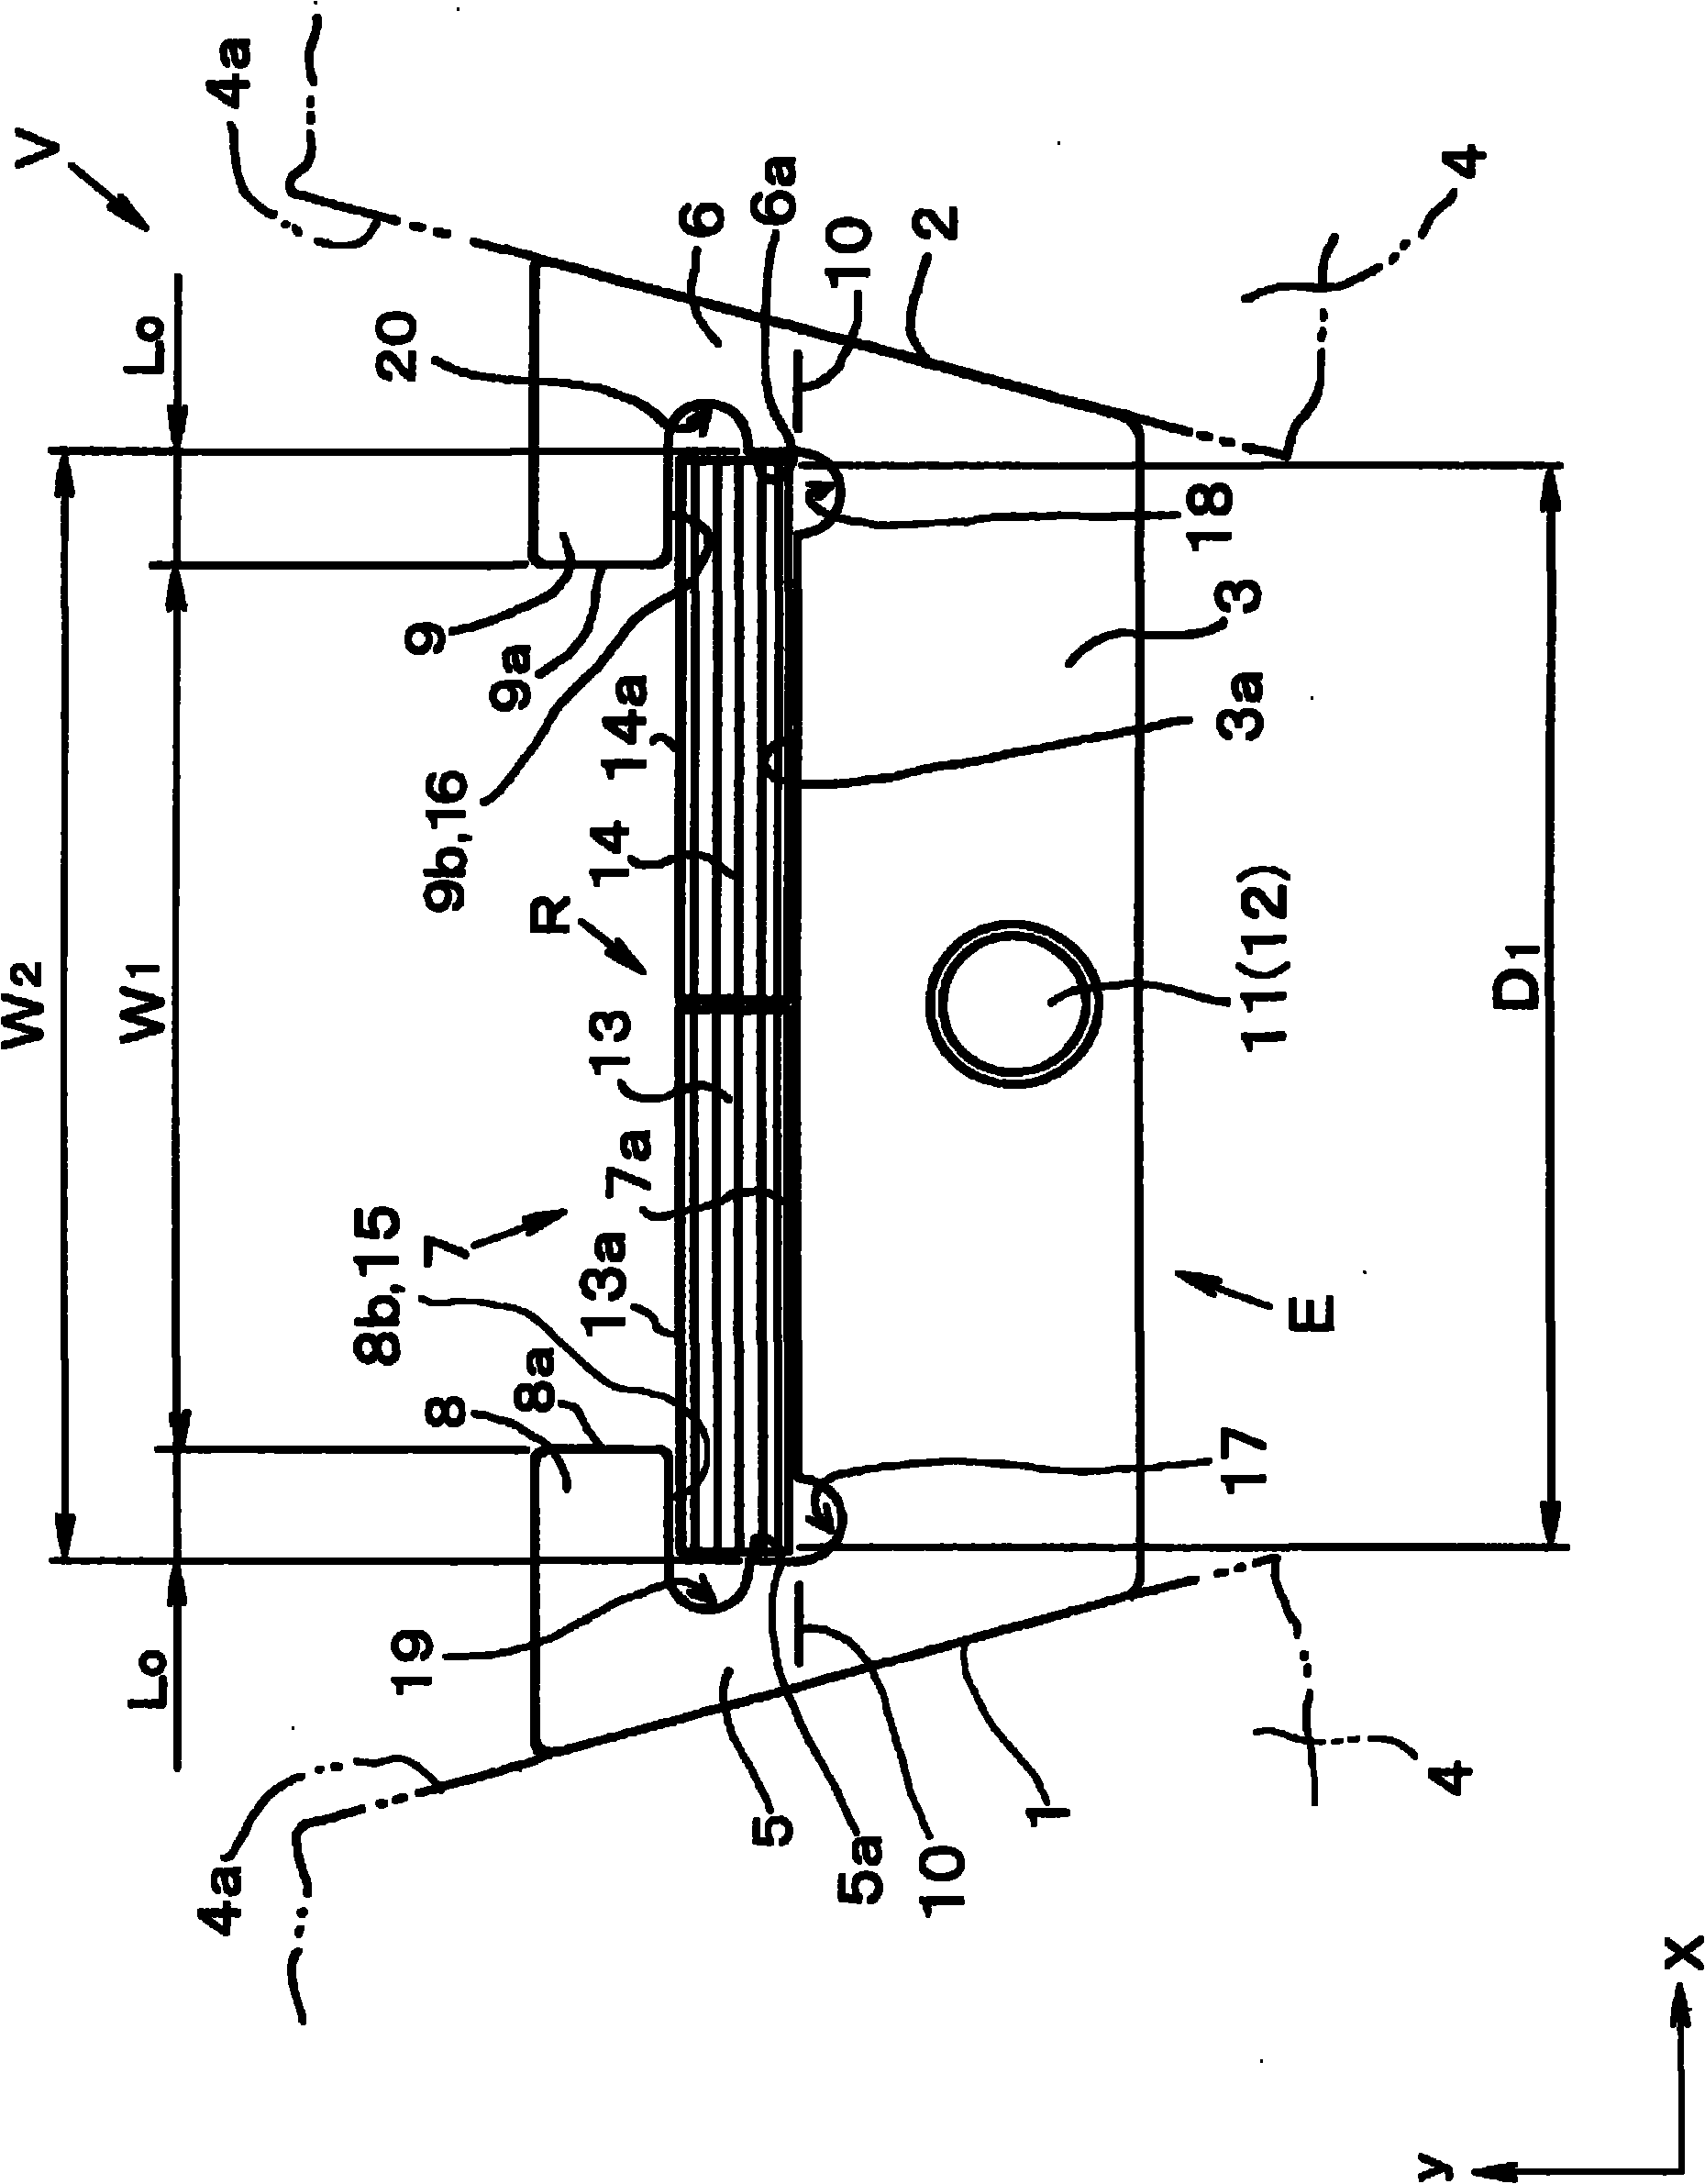 Belt element and transmission belt